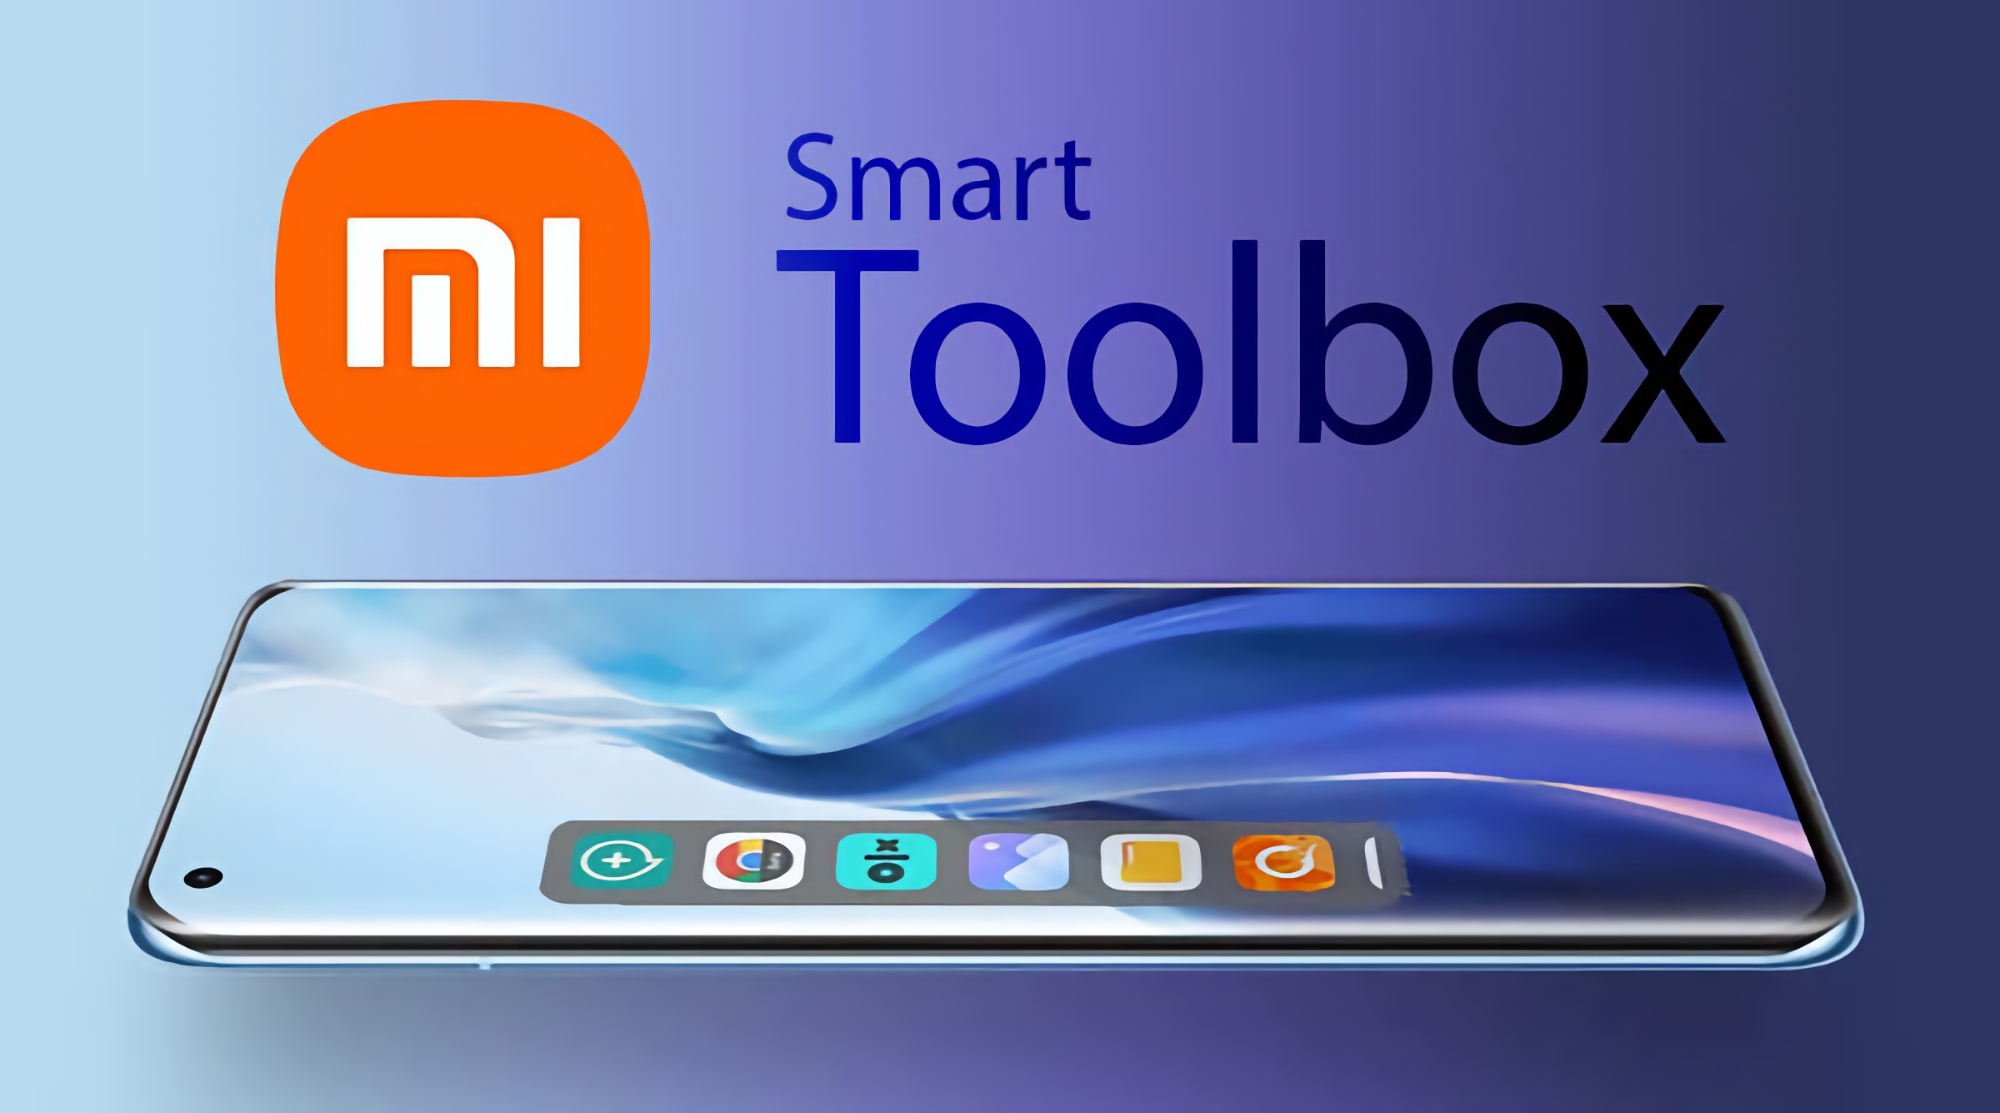 Die MIUI Smart Toolbox: Was sie ist und wie sie funktioniert